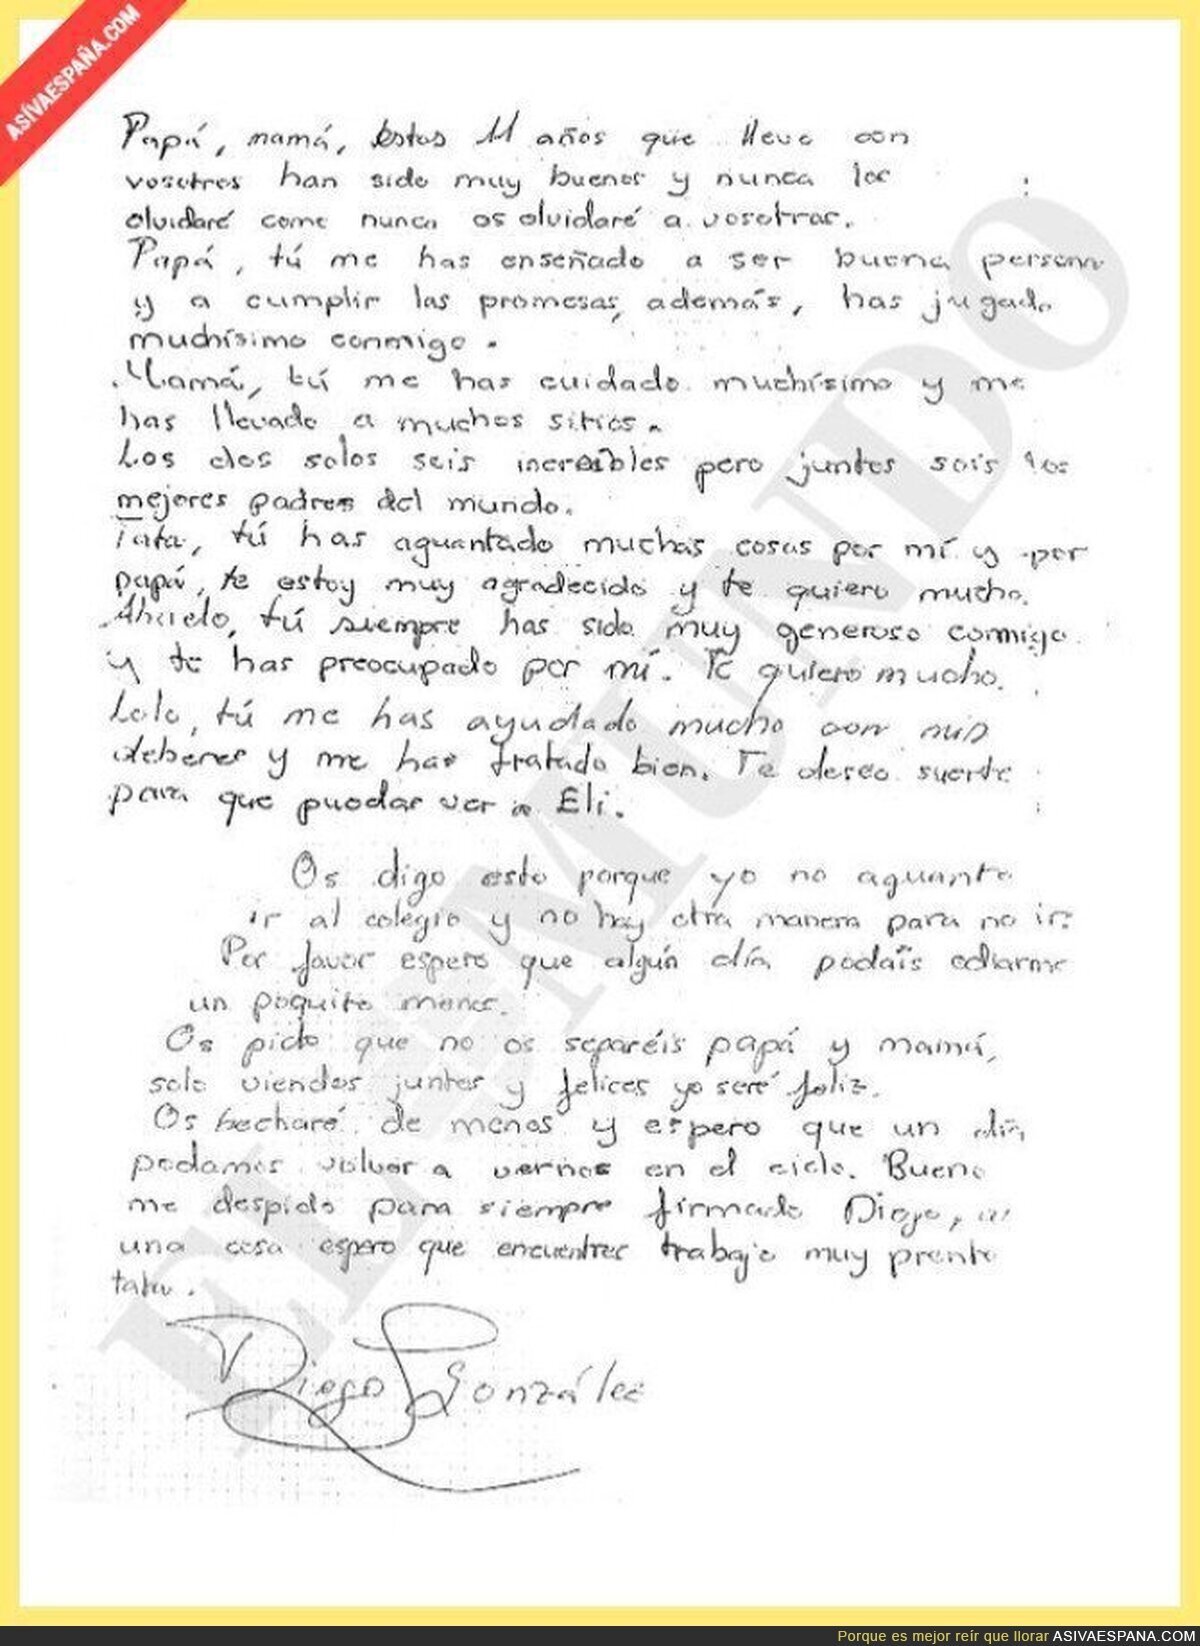 La carta de Diego (11 años) despidiéndose de su familia antes de suicidarse por el acoso escolar :(